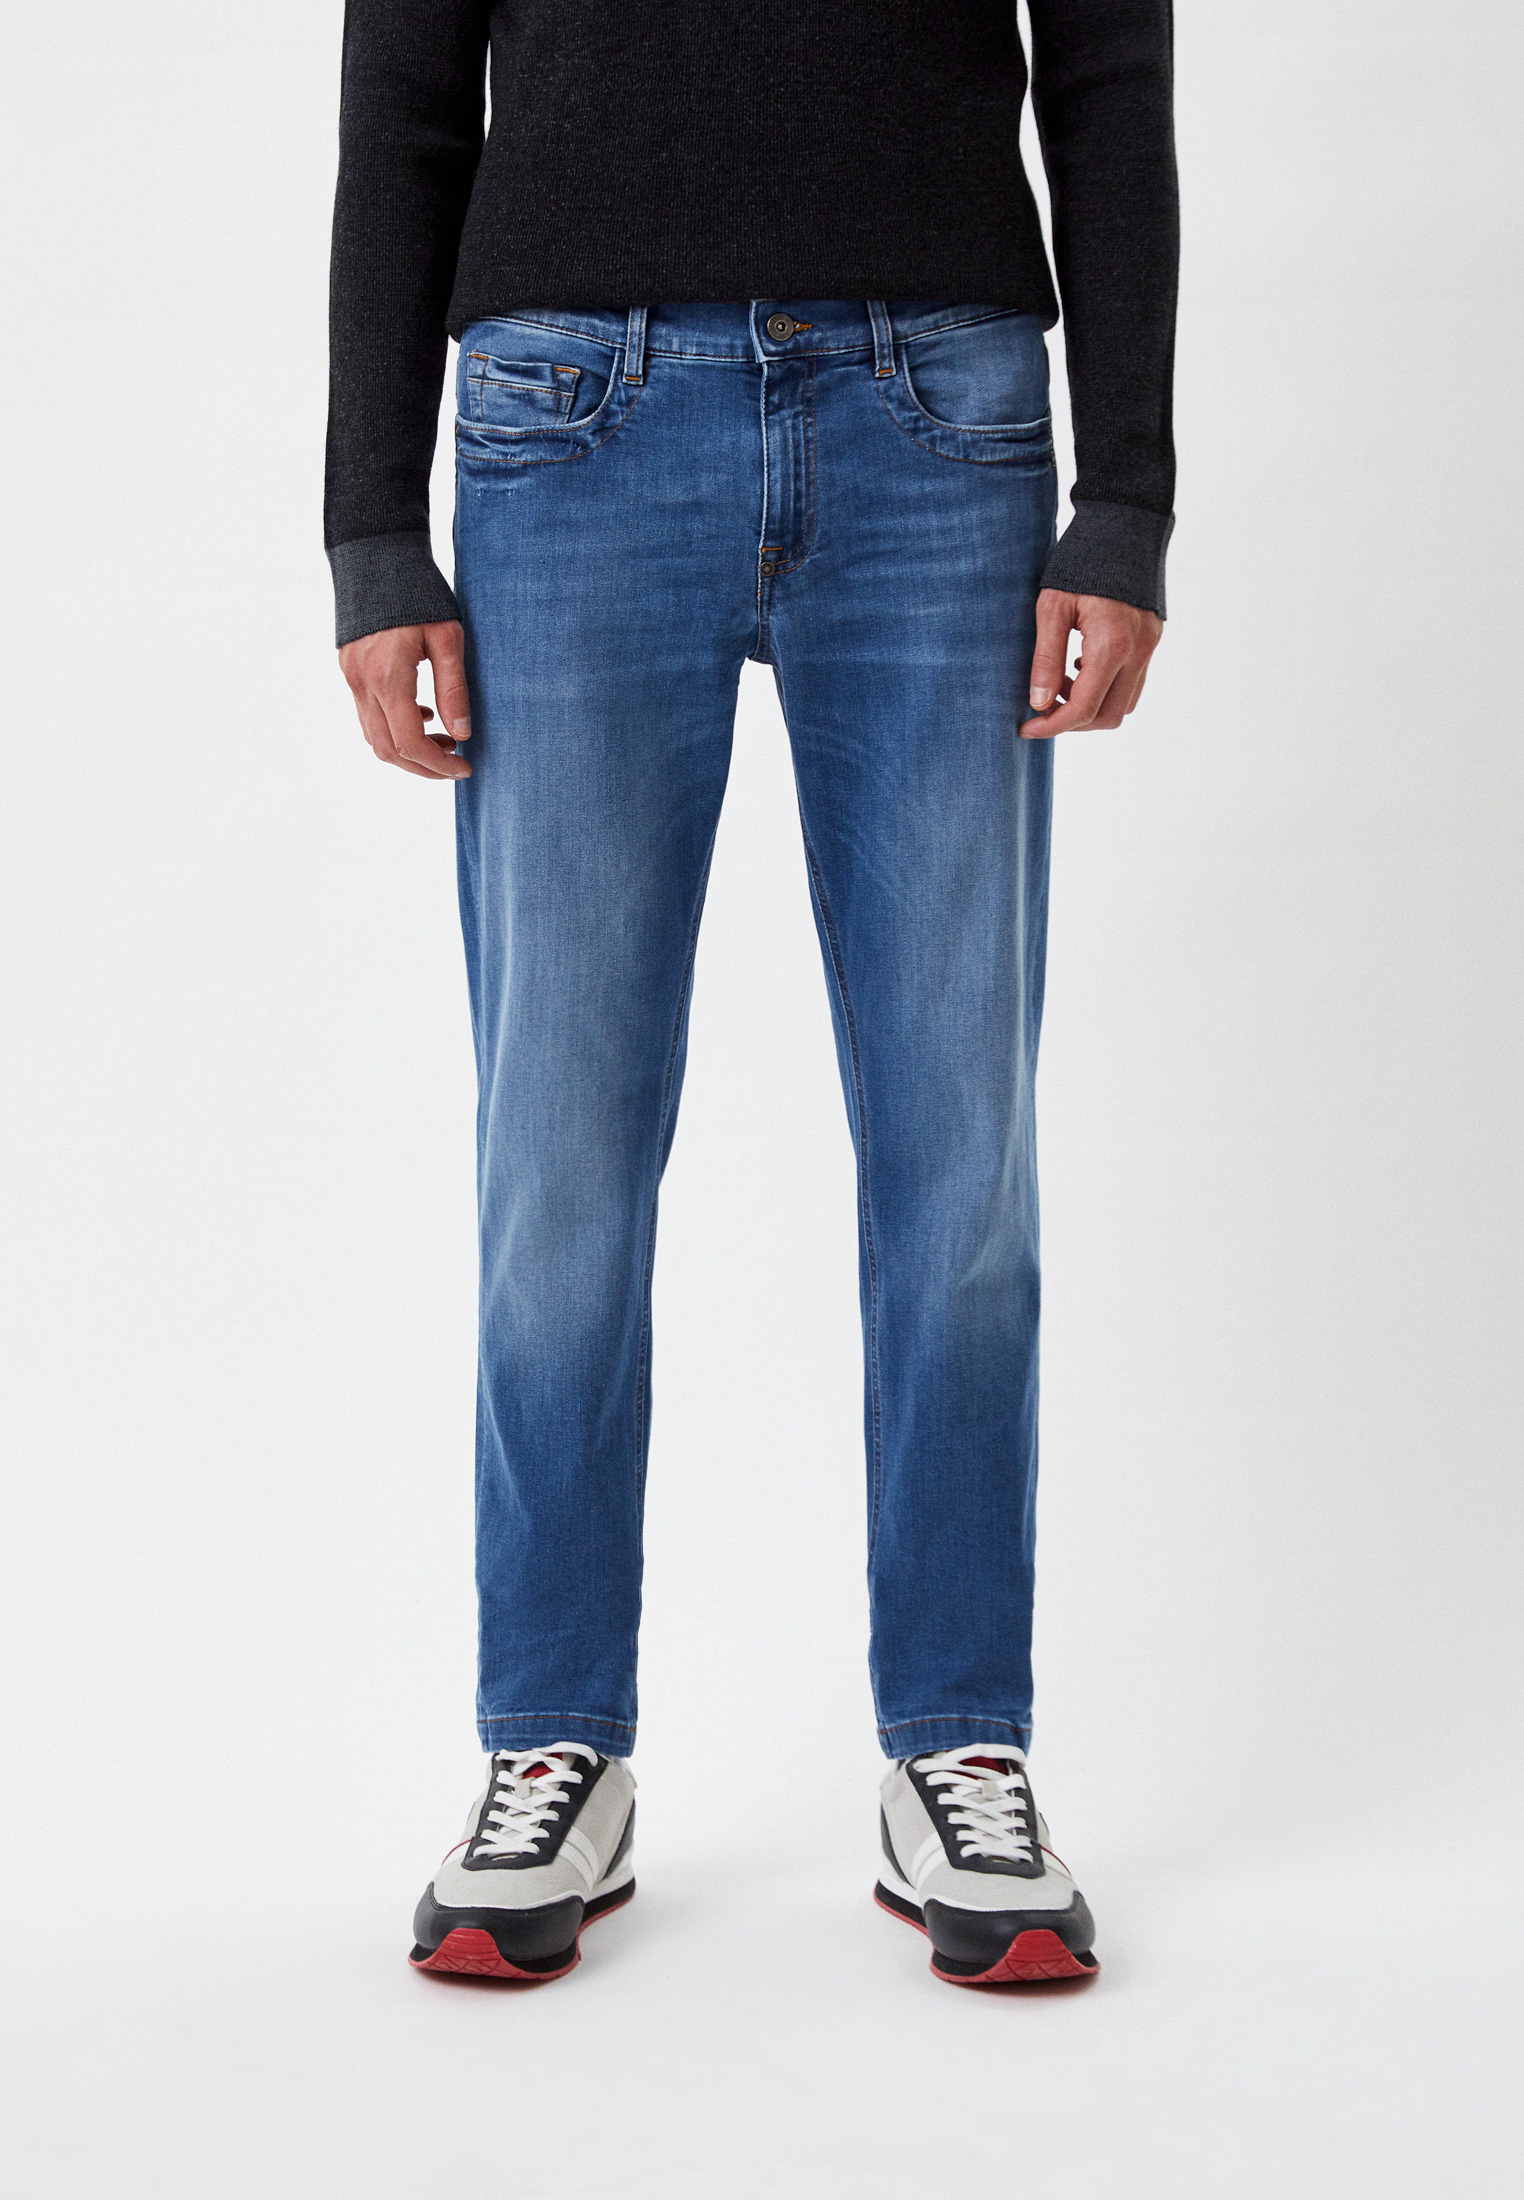 Мужские зауженные джинсы Bikkembergs (Биккембергс) CQ10189S3511: изображение 1